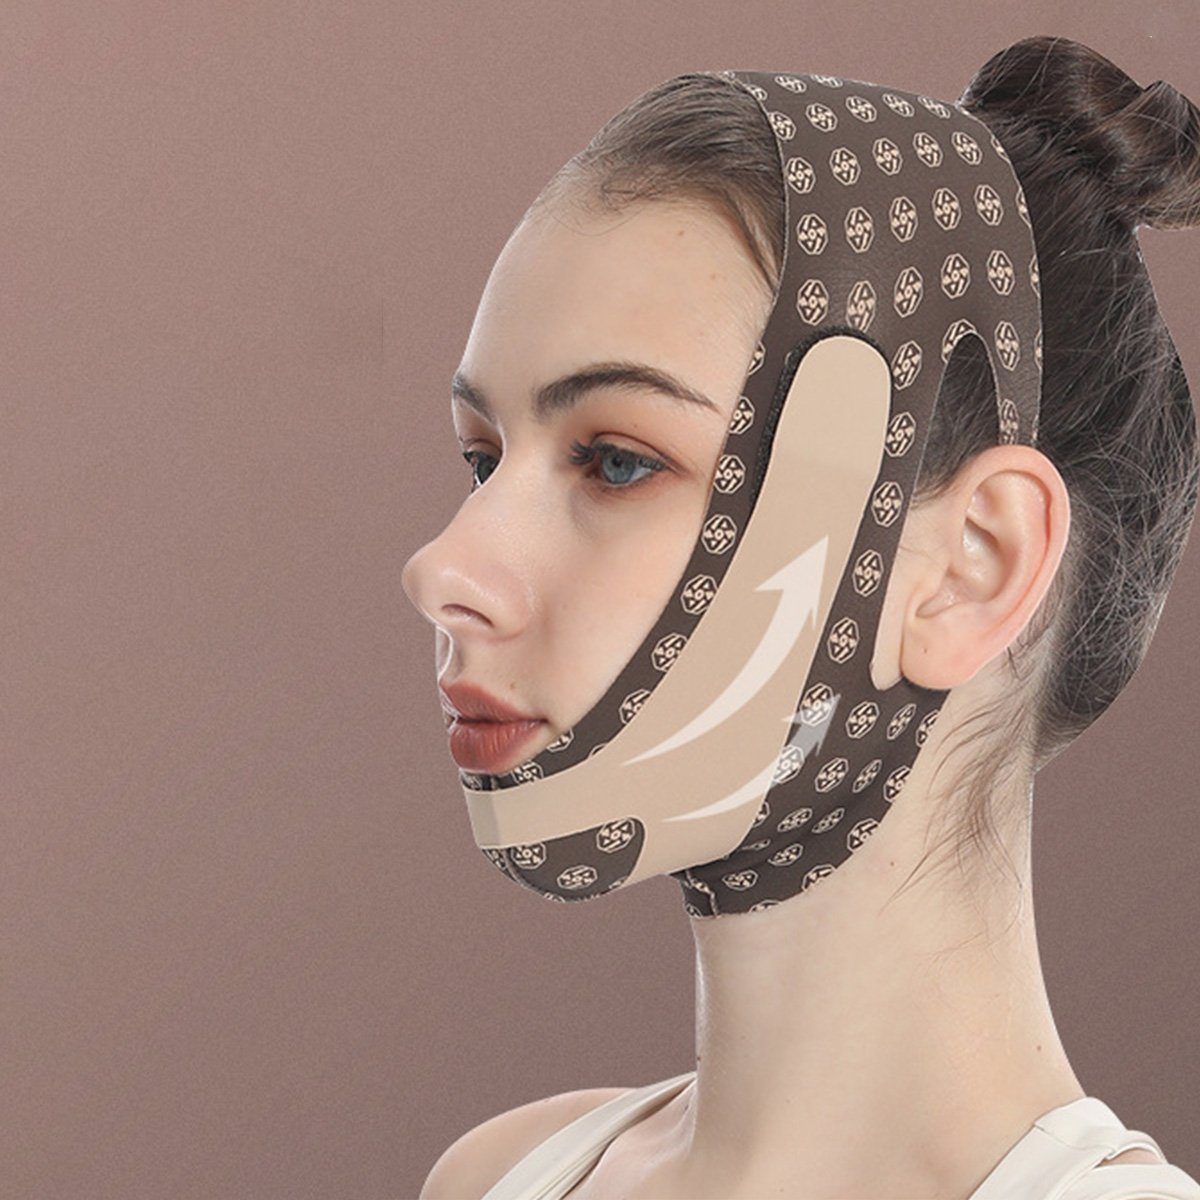 Jormftte Gesichtsmasken-Set Reduzierer Gesicht Schlampengurt V